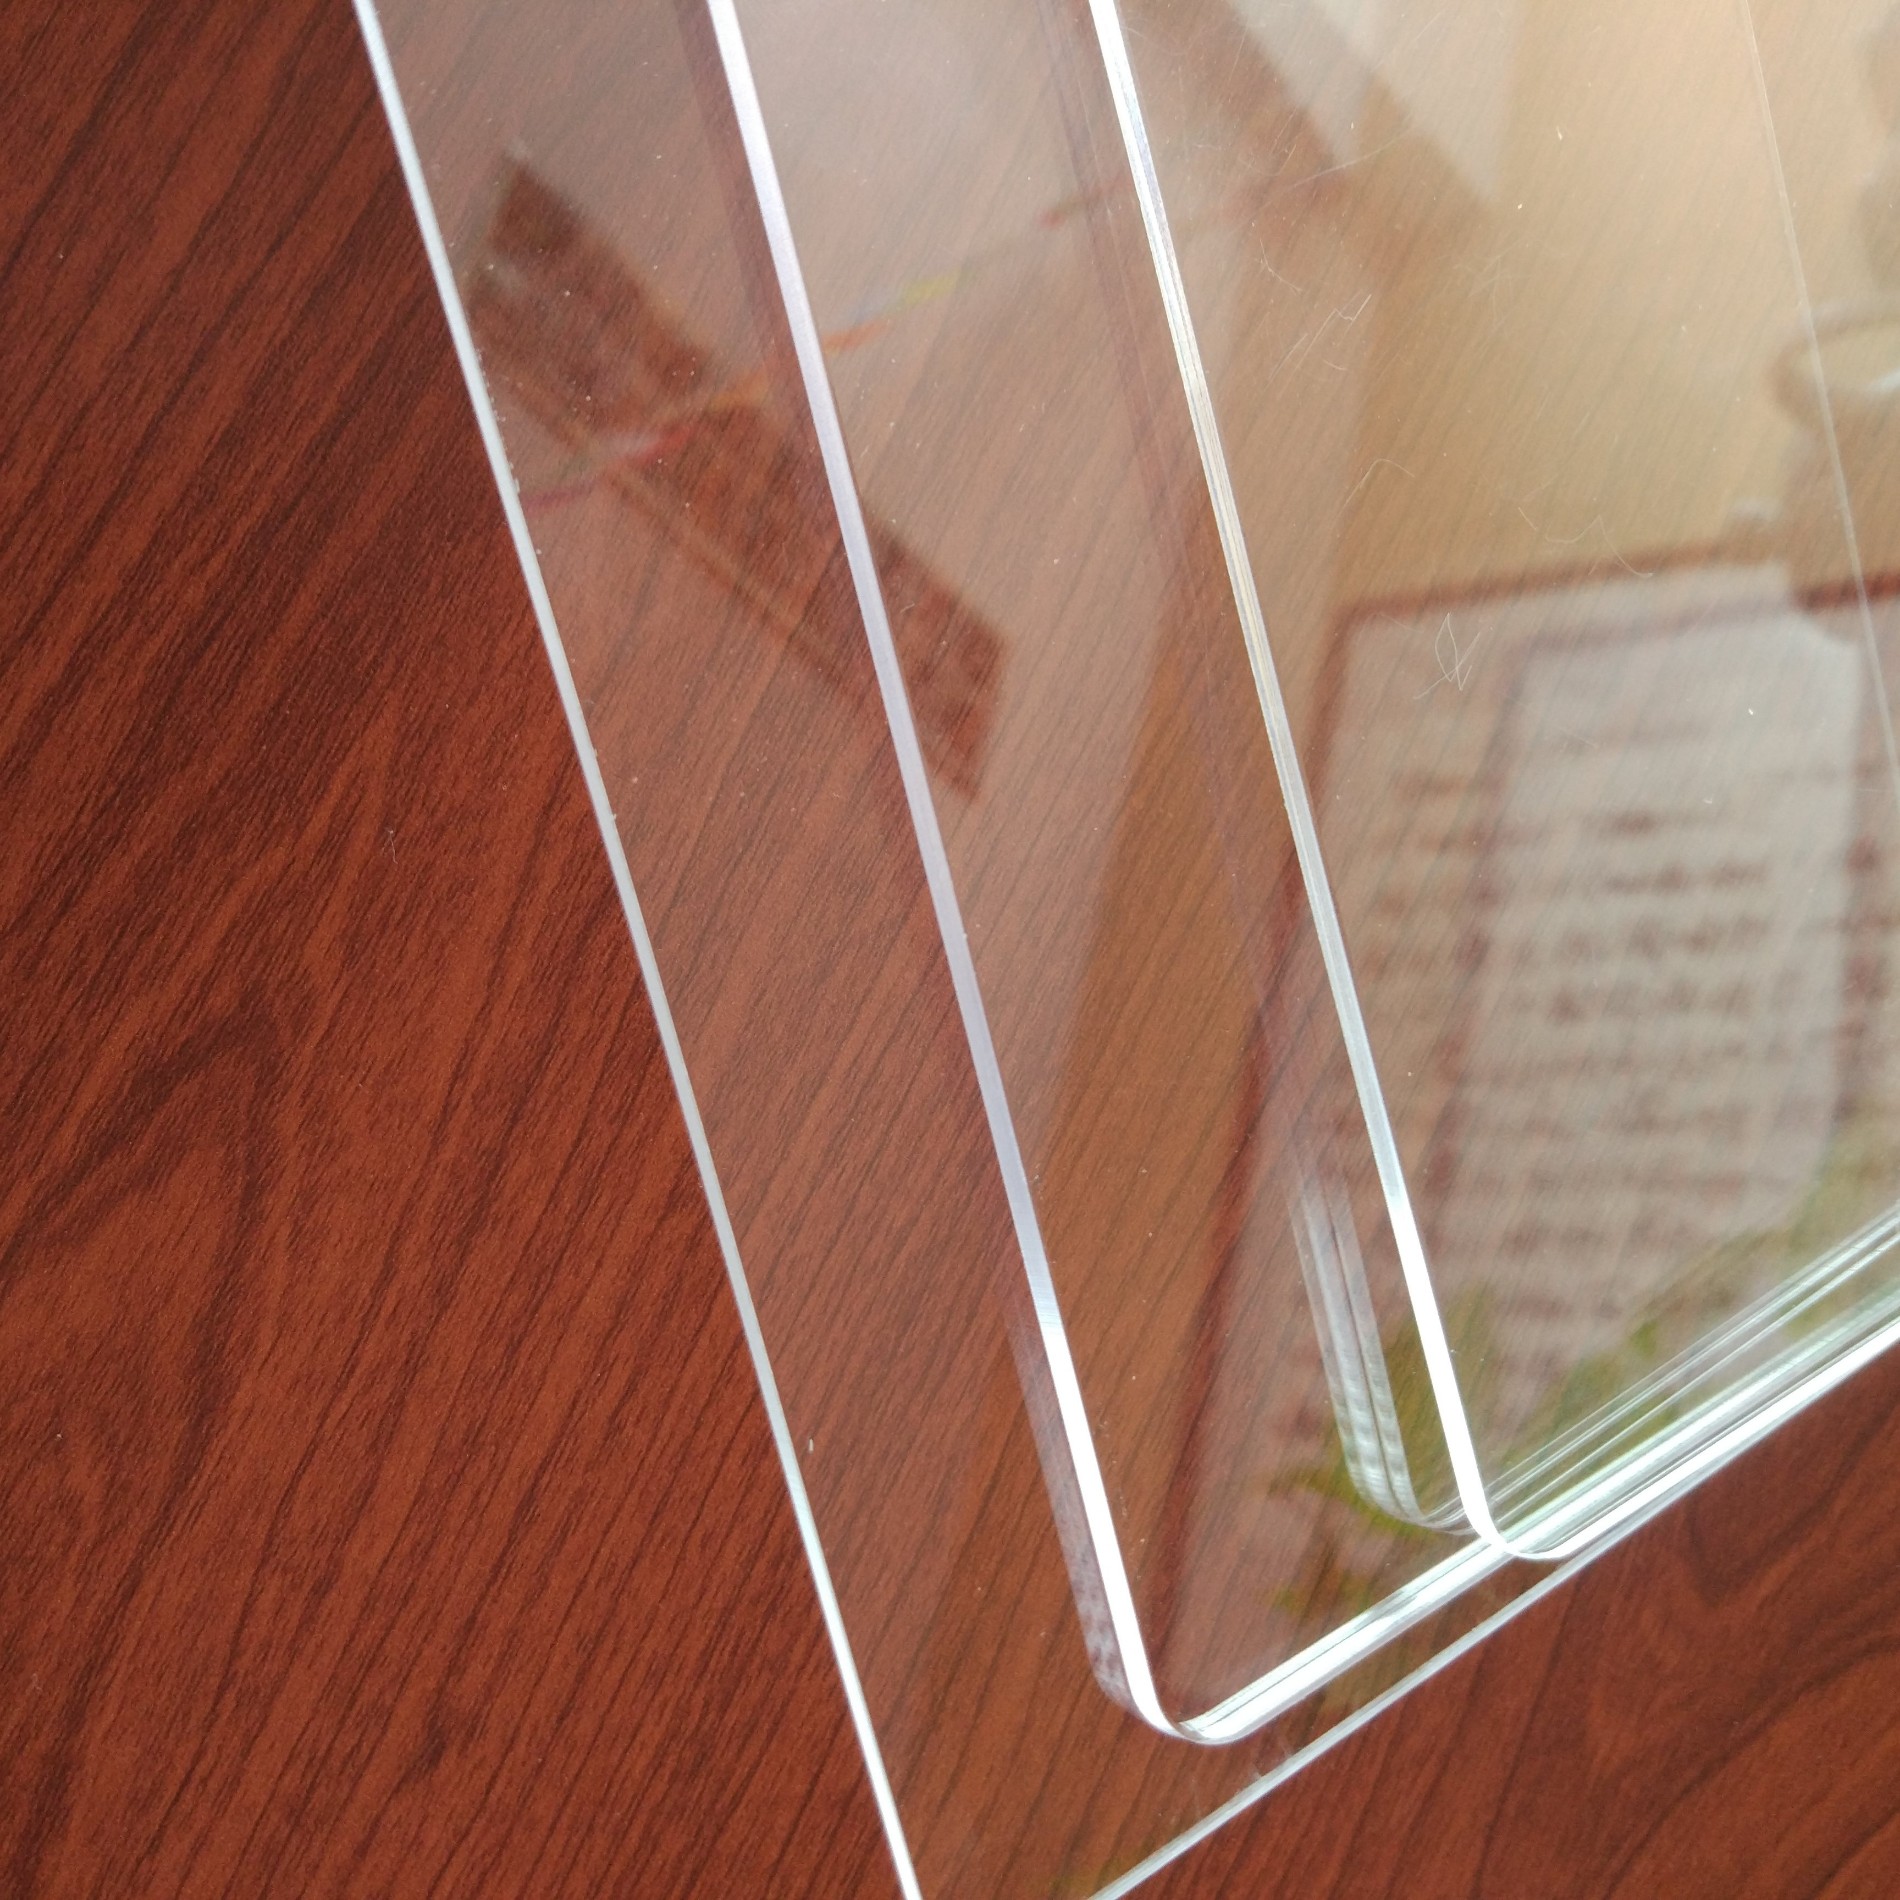 Mua Reflection cao Plexiglass tấm cho Picture Frame,Reflection cao Plexiglass tấm cho Picture Frame Giá ,Reflection cao Plexiglass tấm cho Picture Frame Brands,Reflection cao Plexiglass tấm cho Picture Frame Nhà sản xuất,Reflection cao Plexiglass tấm cho Picture Frame Quotes,Reflection cao Plexiglass tấm cho Picture Frame Công ty